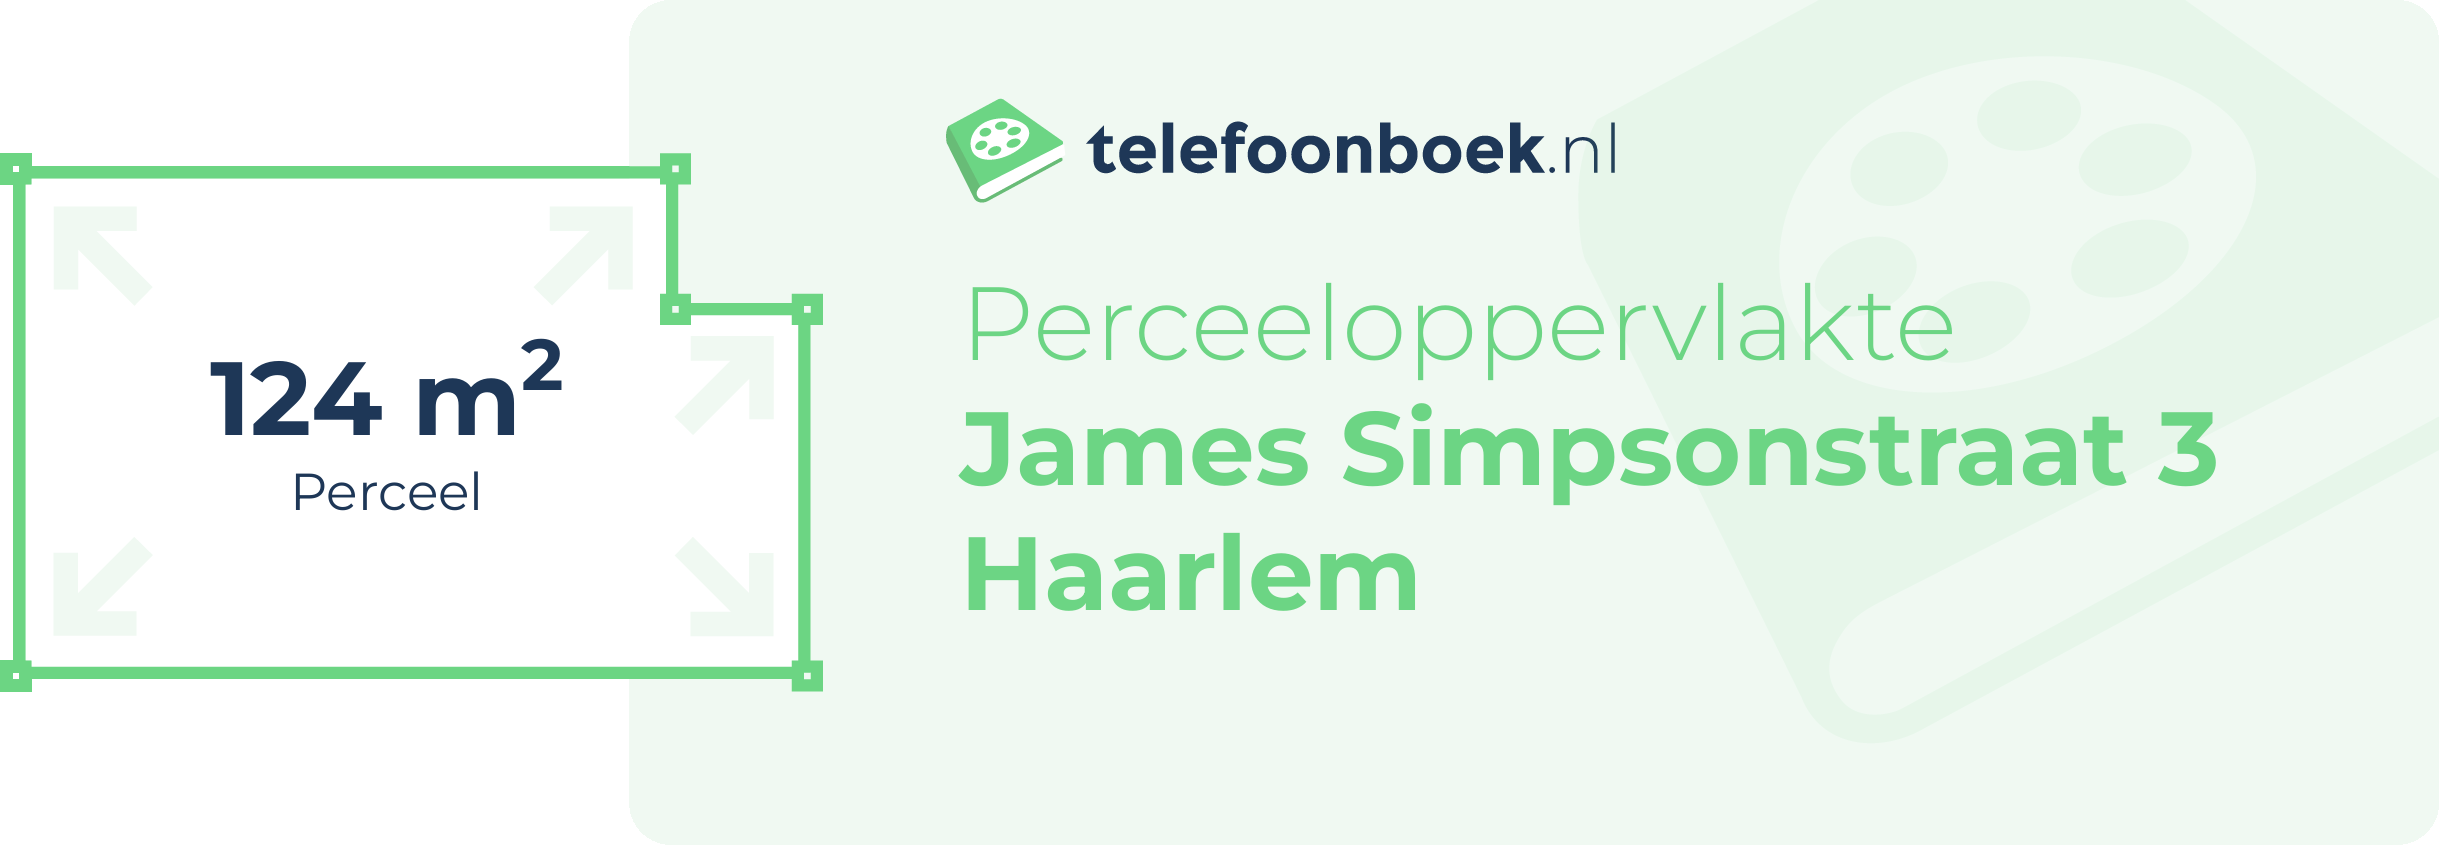 Perceeloppervlakte James Simpsonstraat 3 Haarlem